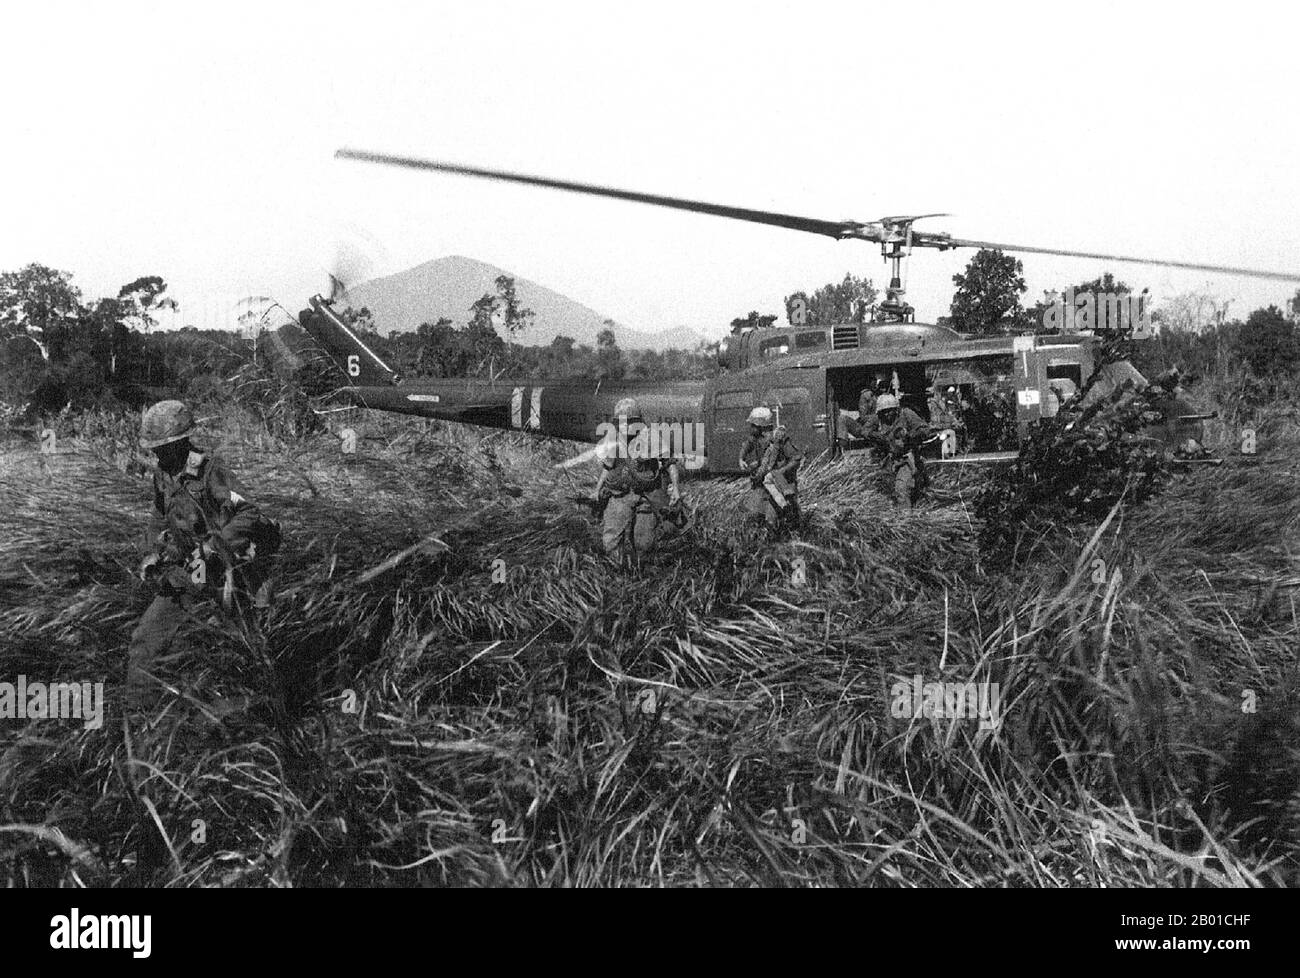 Vietnam: US-Infanterie greift während der Operation Attleboro, Central Highlands, 1966 von einem Huey UH-1D Hubschrauber aus an. Der zweite Indochina-Krieg, in Amerika als Vietnamkrieg bekannt, war ein militärischer Konflikt aus der Zeit des Kalten Krieges, der sich in Vietnam, Laos und Kambodscha vom 1. November 1955 bis zum Fall Saigons am 30. April 1975 ereignete. Dieser Krieg folgte dem ersten Indochina-Krieg und wurde zwischen Nordvietnam, unterstützt von seinen kommunistischen Verbündeten, und der Regierung von Südvietnam, unterstützt von den USA und anderen antikommunistischen Nationen, geführt. Stockfoto